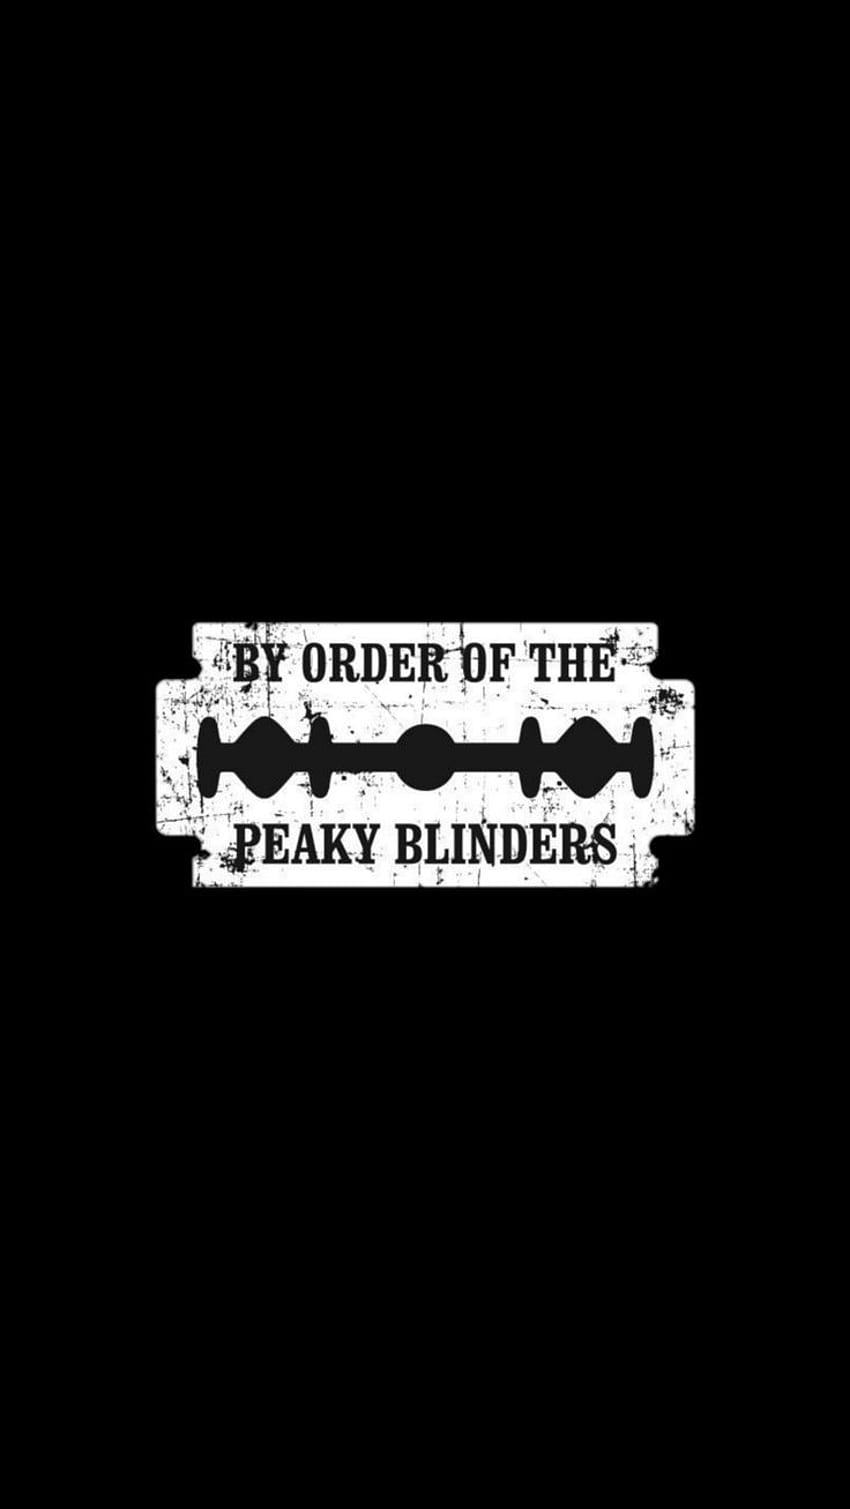 Peaky.blinders, art, sleeve HD phone wallpaper